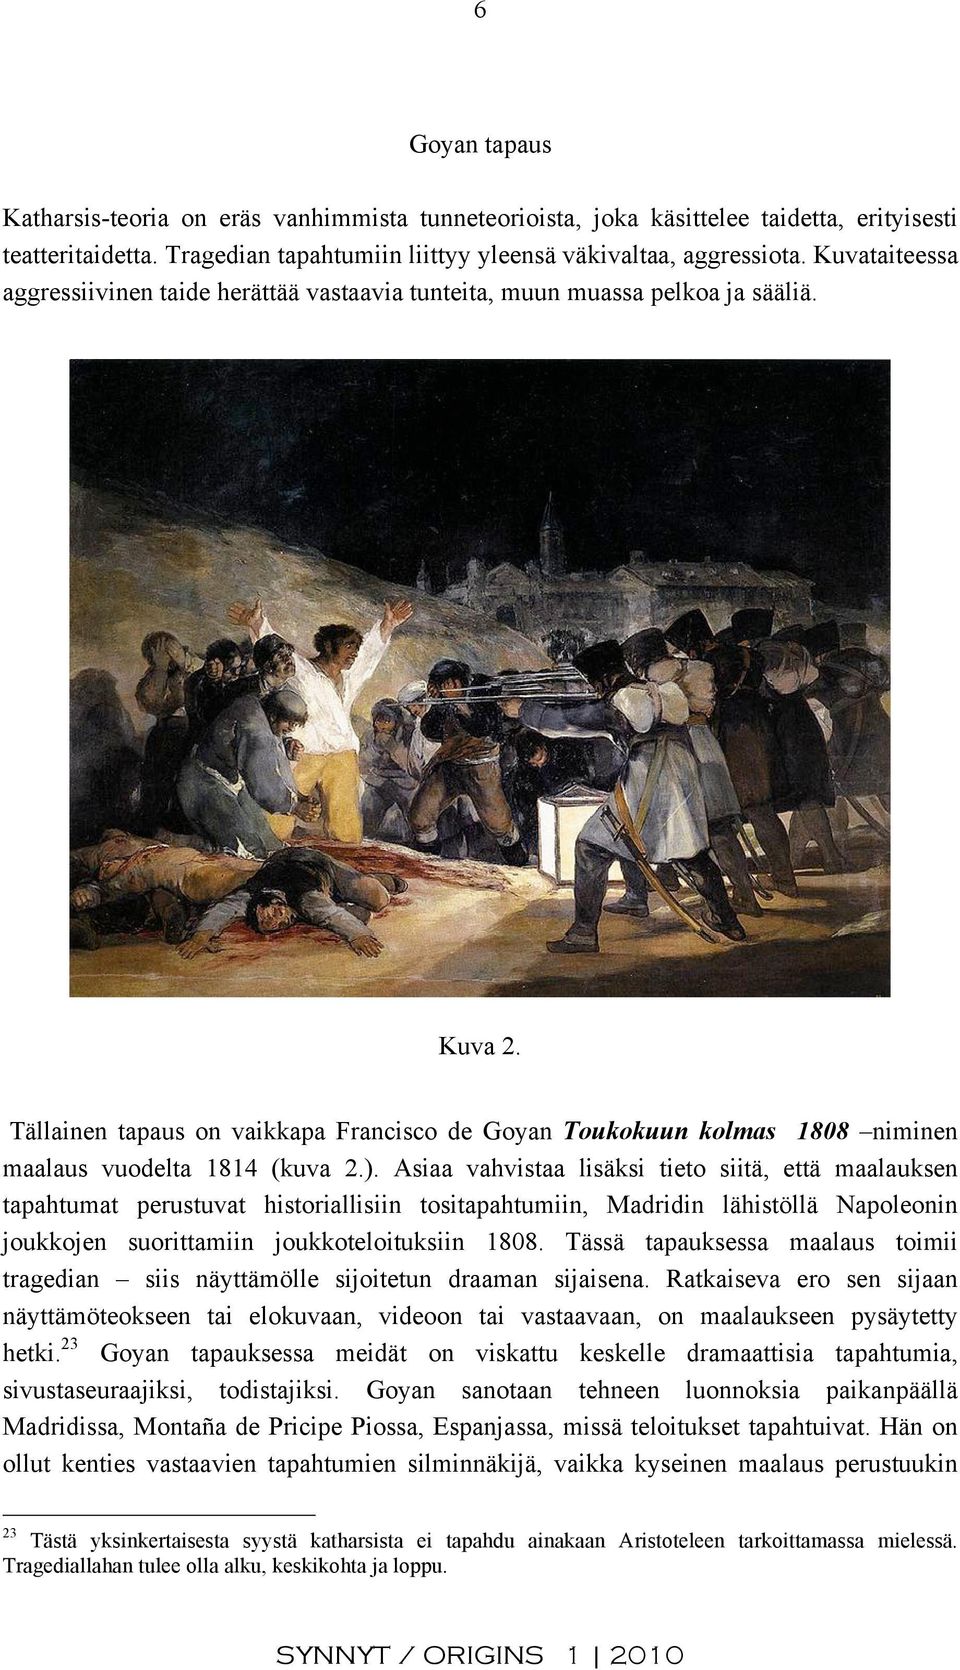 Tällainen tapaus on vaikkapa Francisco de Goyan Toukokuun kolmas 1808 niminen maalaus vuodelta 1814 (kuva 2.).